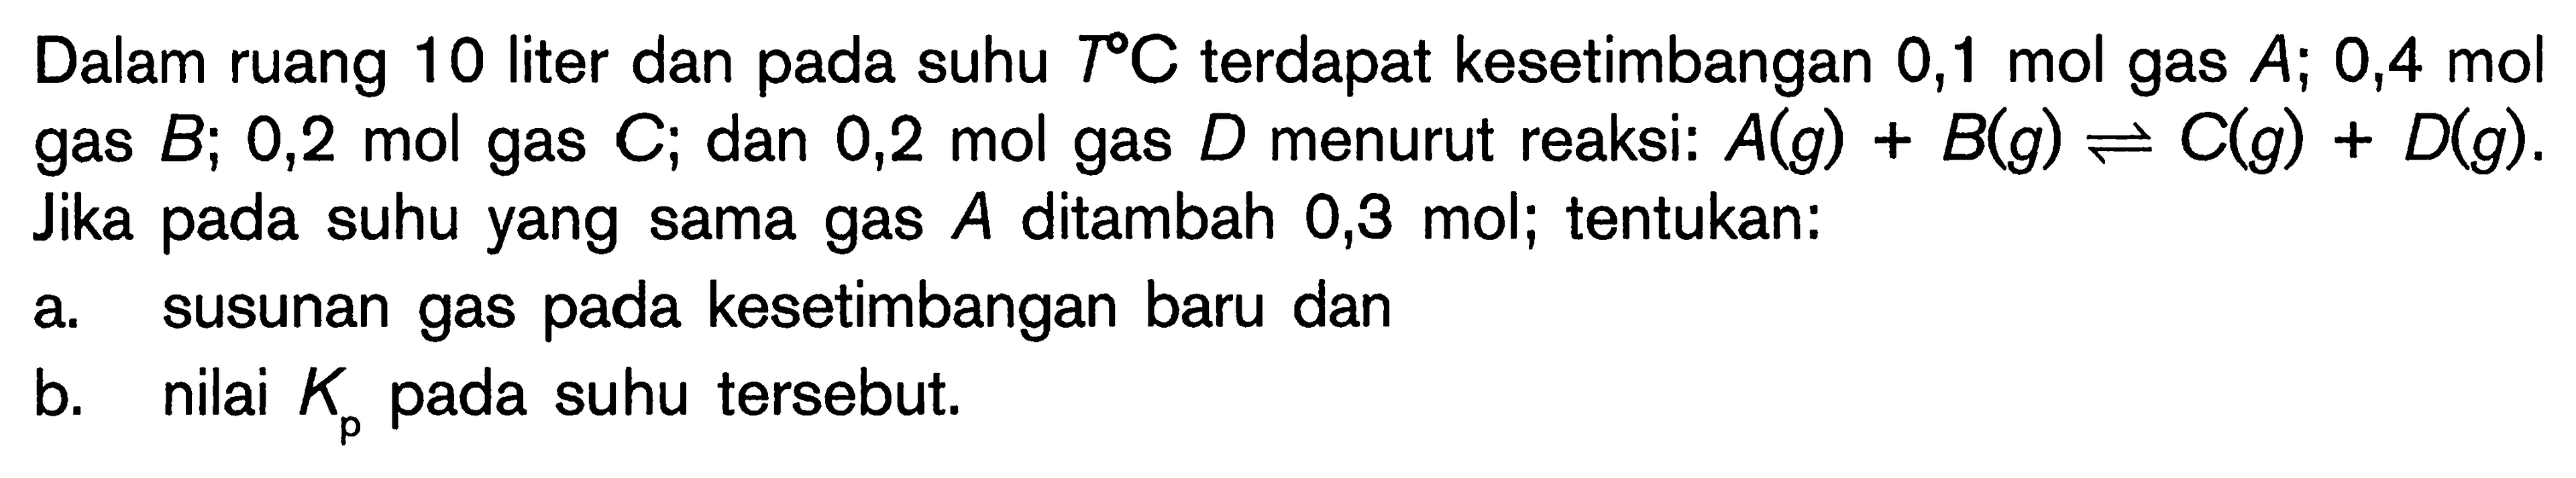 Dalam ruang 10 liter dan pada suhu T C terdapat kesetimbangan 0,1 mol gas A; 0,4 mol gas B; 0,2 mol gas C; dan 0,2 mol gas D menurut reaksi: A(g) + B(g) <=> C(g) + D(g). Jika pada suhu yang sama gas A ditambah 0,3 mol; tentukan: a. susunan gas pada kesetimbangan baru dan b. nilai Kp pada suhu tersebut.